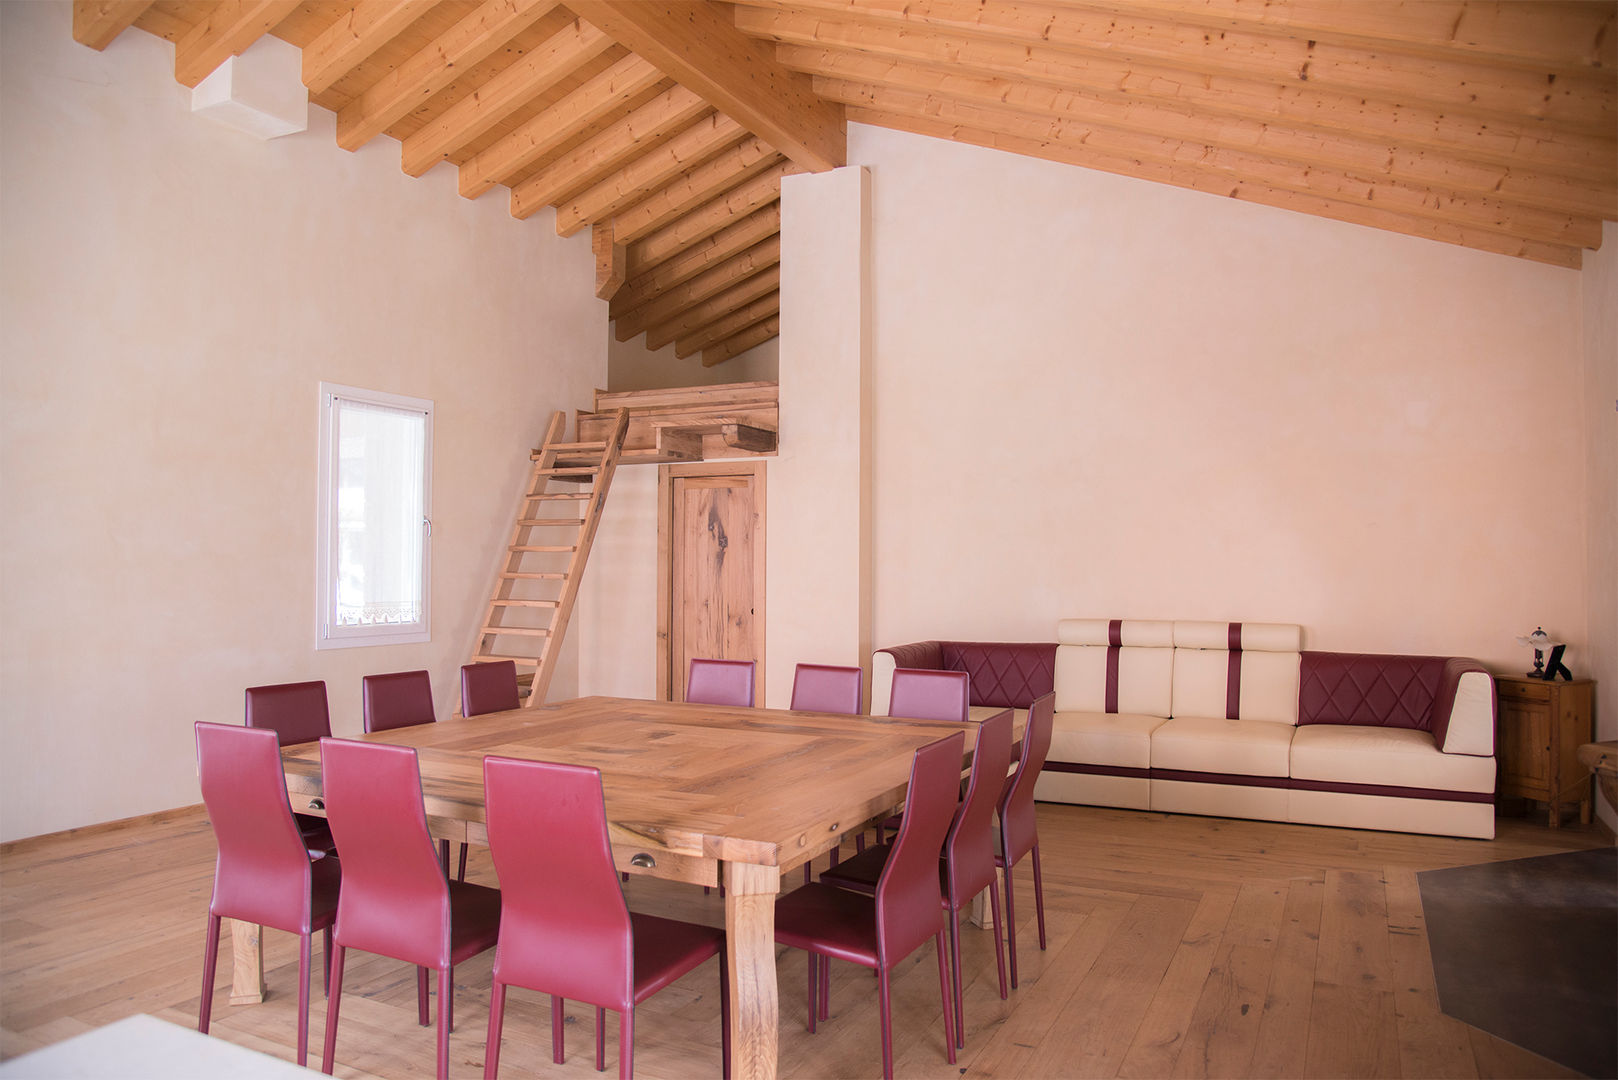 Villa Rustica: L’ultimo progetto RI-NOVO che ti fa innamorare , RI-NOVO RI-NOVO Living room